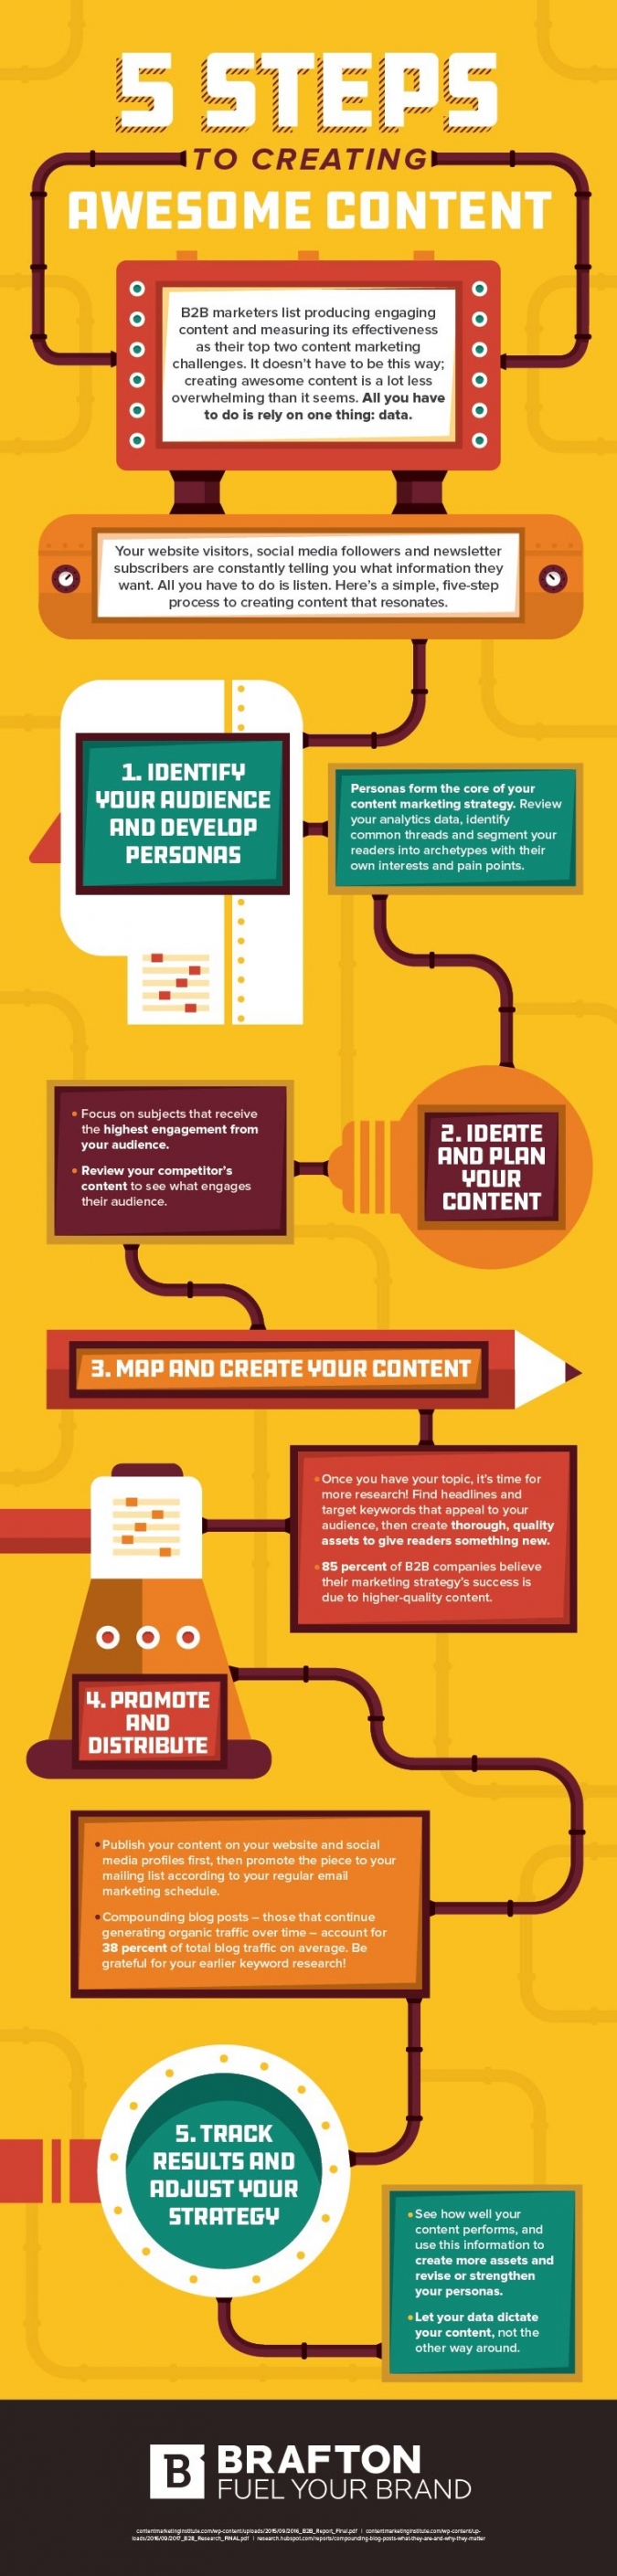 Content Marketing Strategie Tipps: 5 top Tipps für erfolgreichen Content [Infografik]